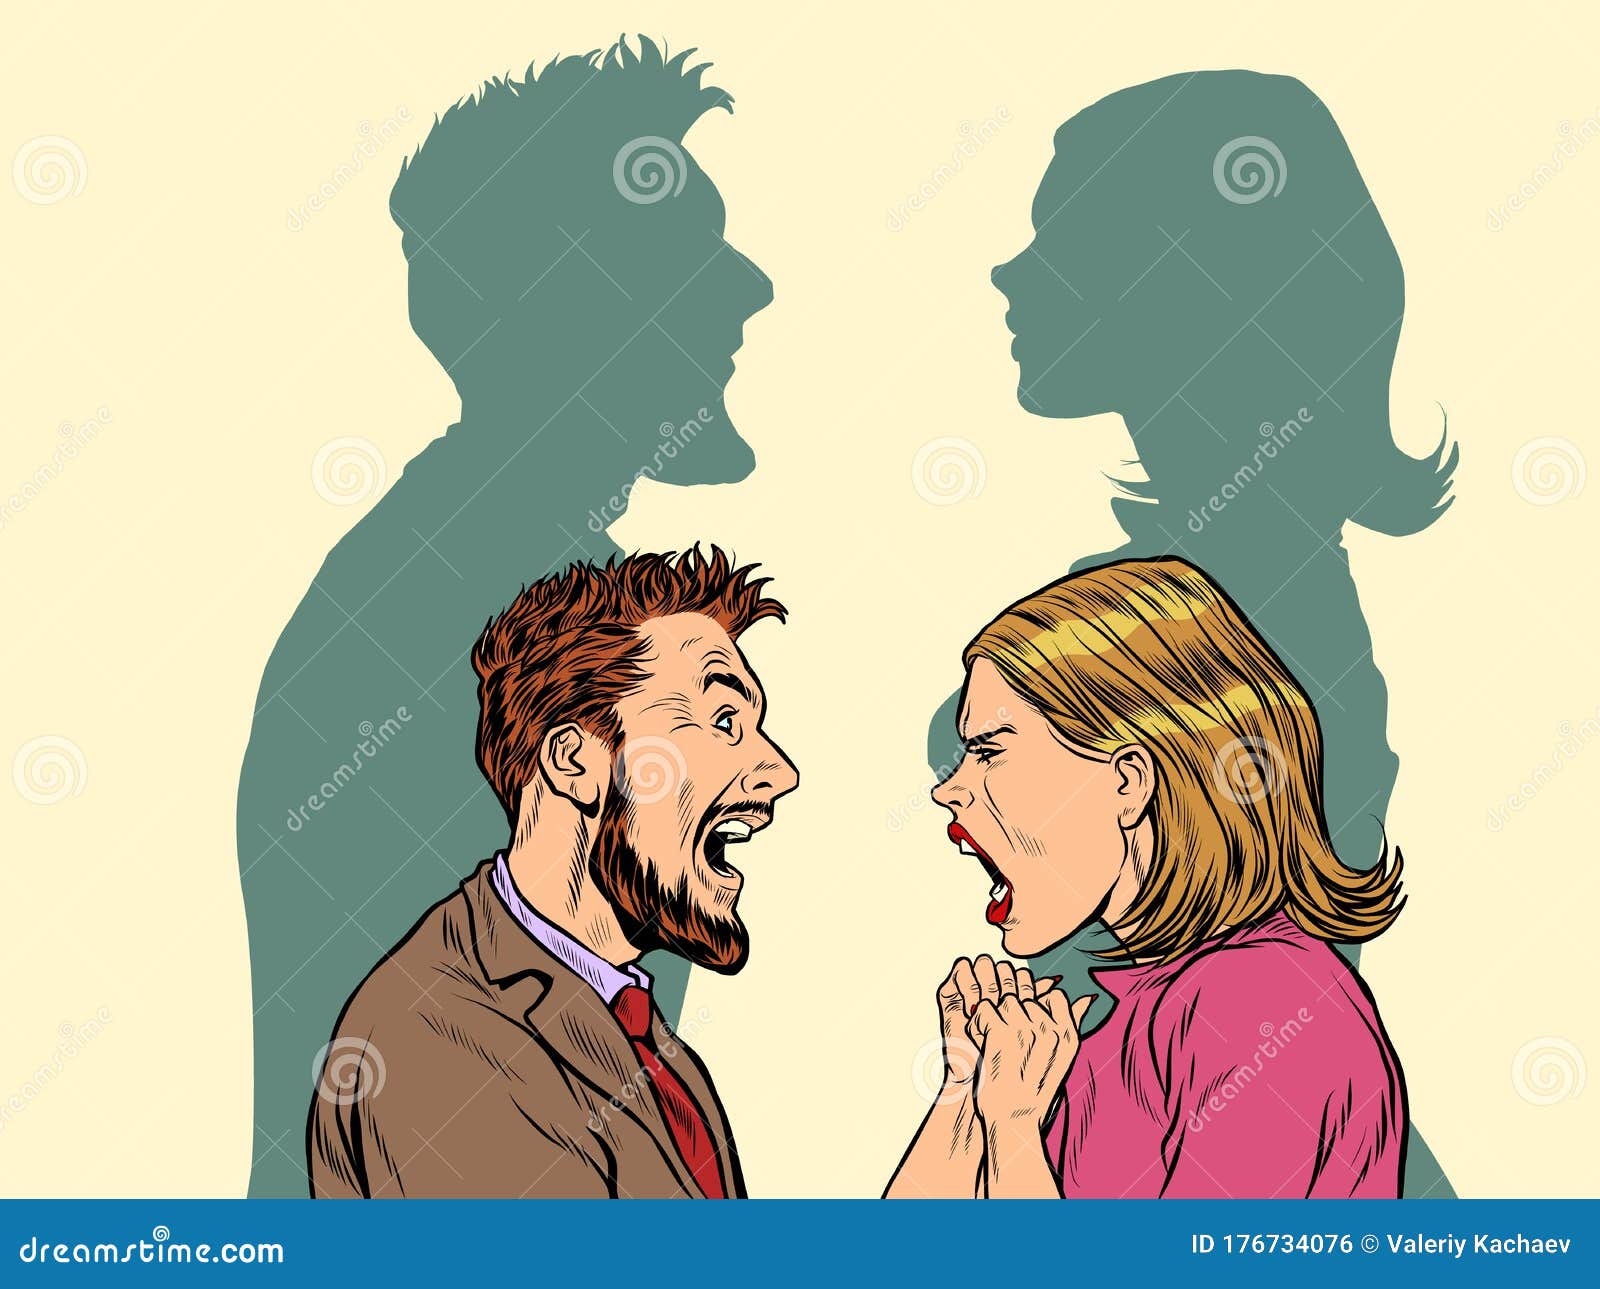 man and woman conflict quarrel concept.